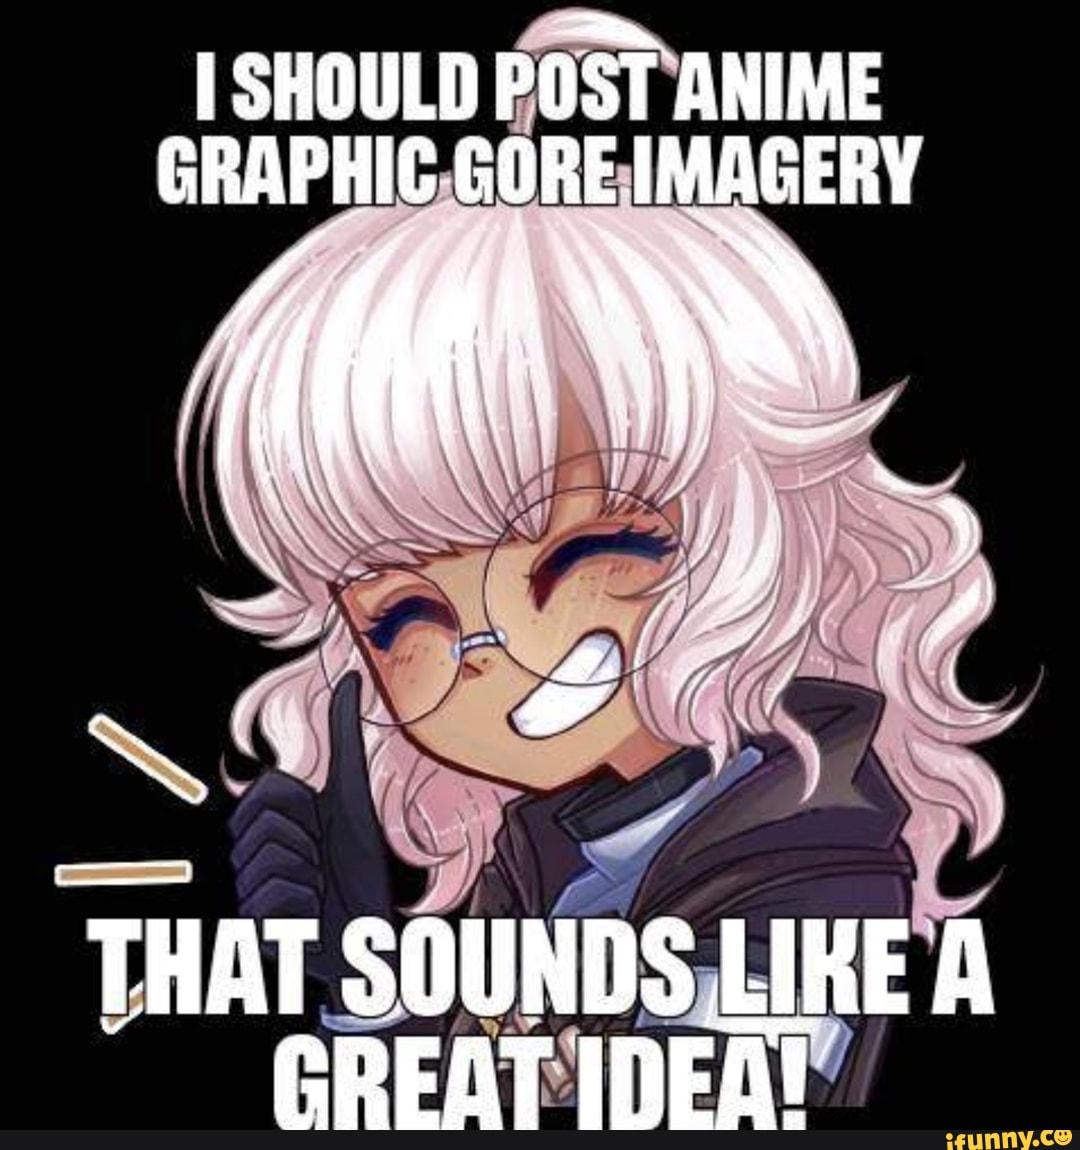 Obnoxious EEEeeUuuuHHHHuu sound here* - Anime & Manga | Anime, Anime memes, Anime  memes funny